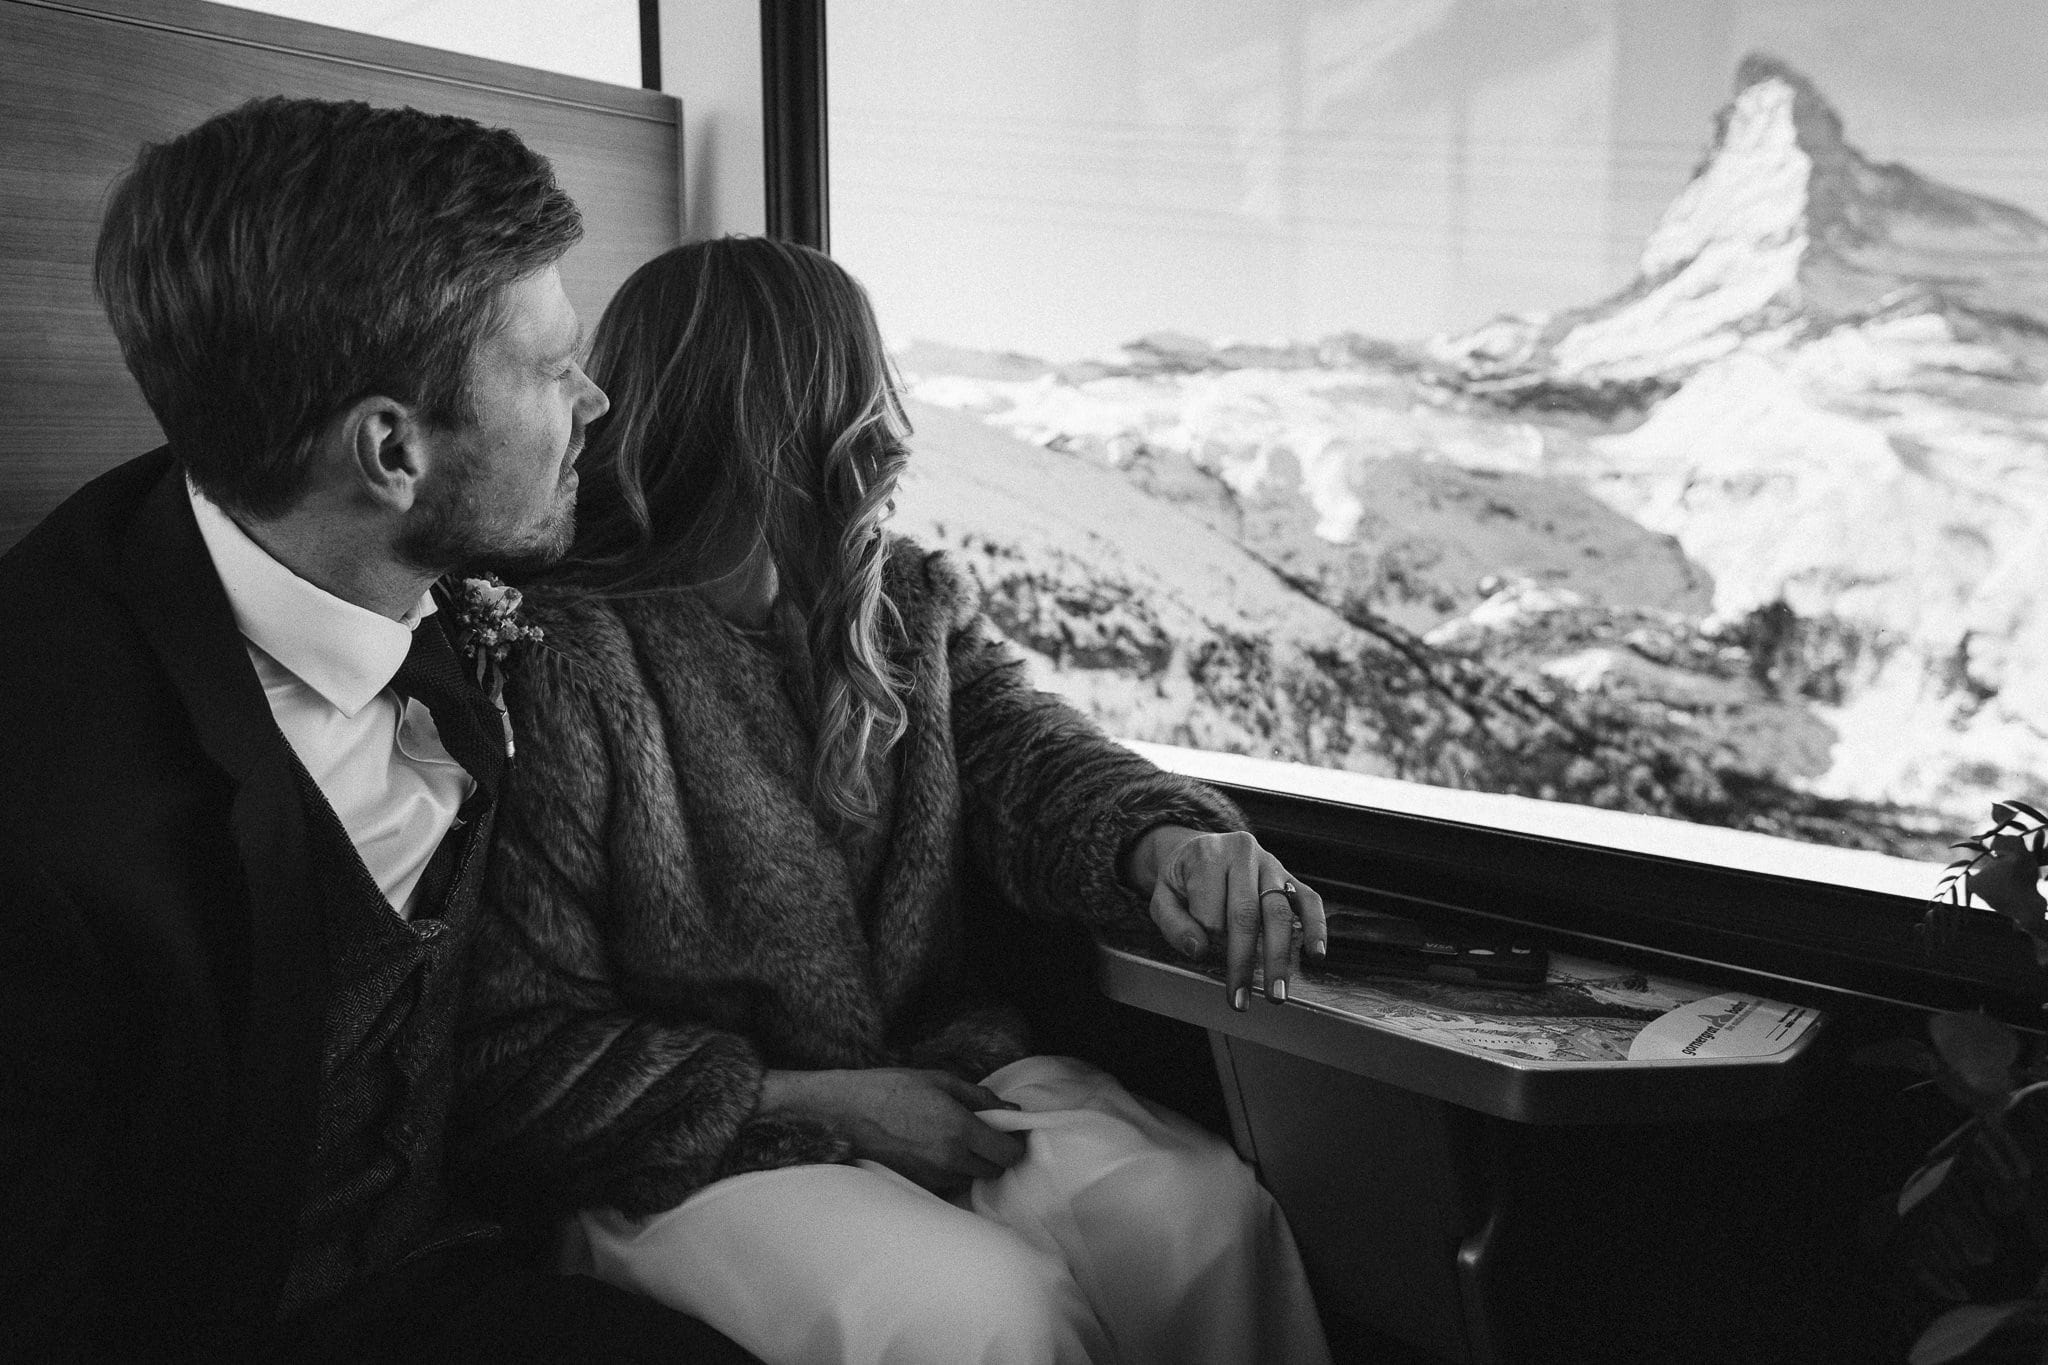 Bride and groom ride the ski train Gornergratbahn in Zermatt, Switzerland.